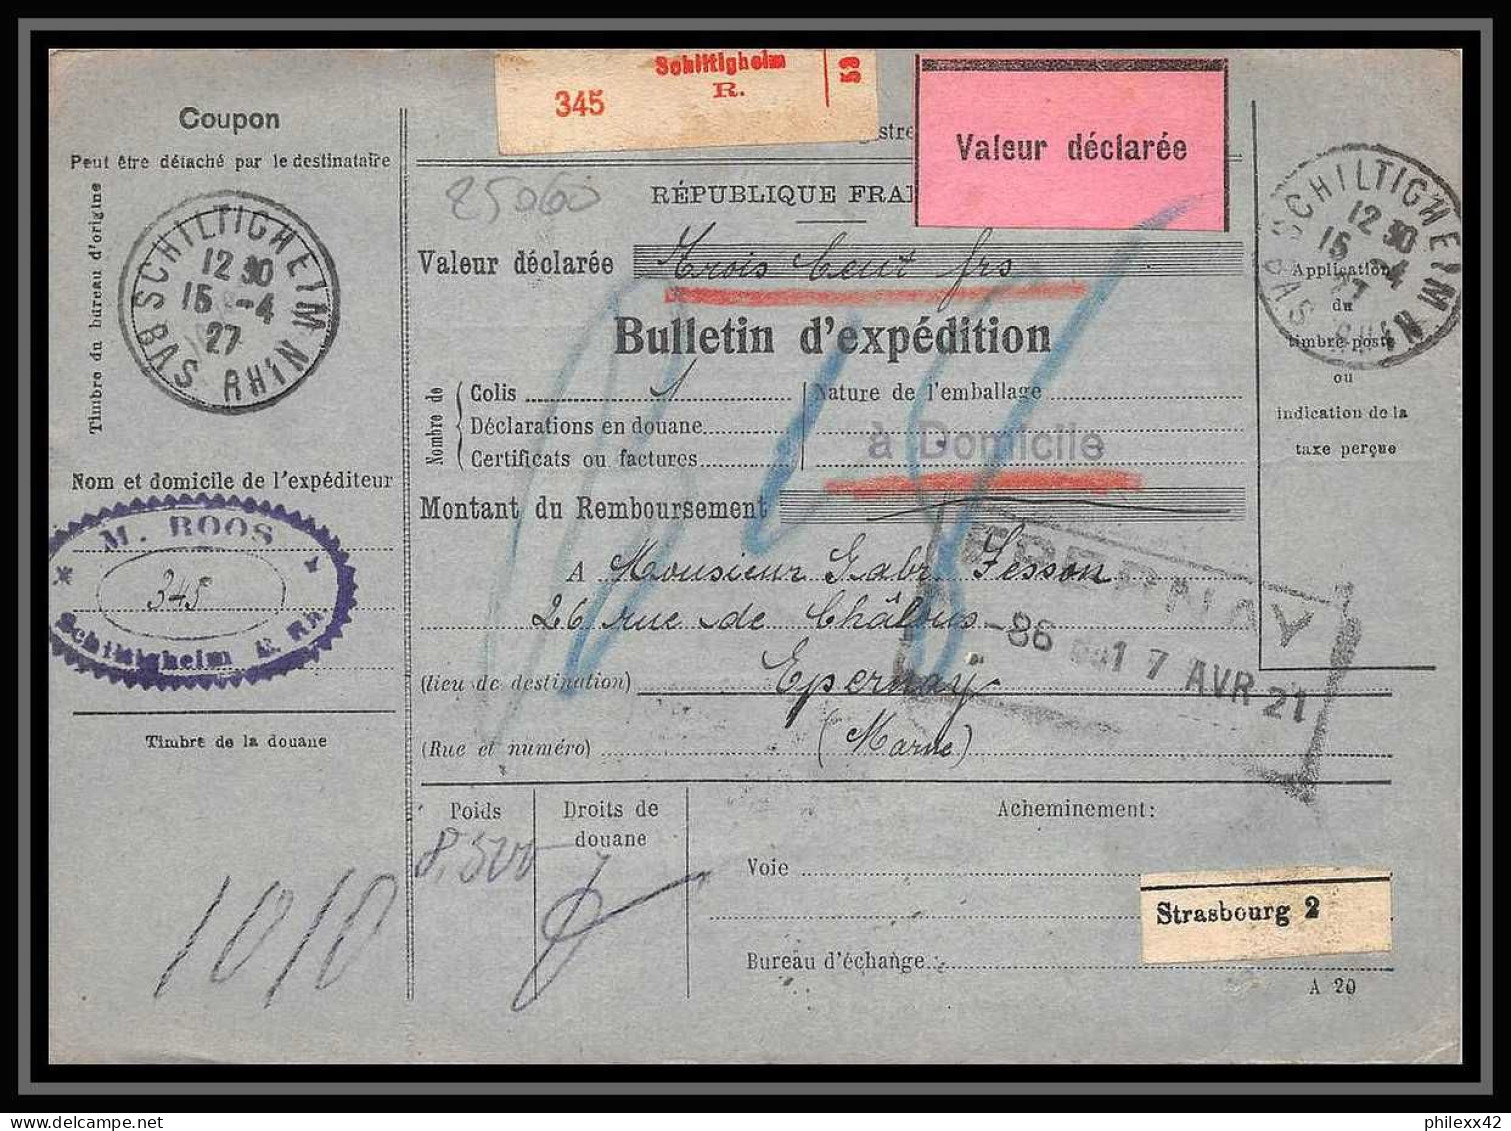 25060 Bulletin D'expédition France Colis Postaux Fiscal Haut Rhin 1927 Schiltigheim Merson 123+145 Valeur Déclarée - Brieven & Documenten